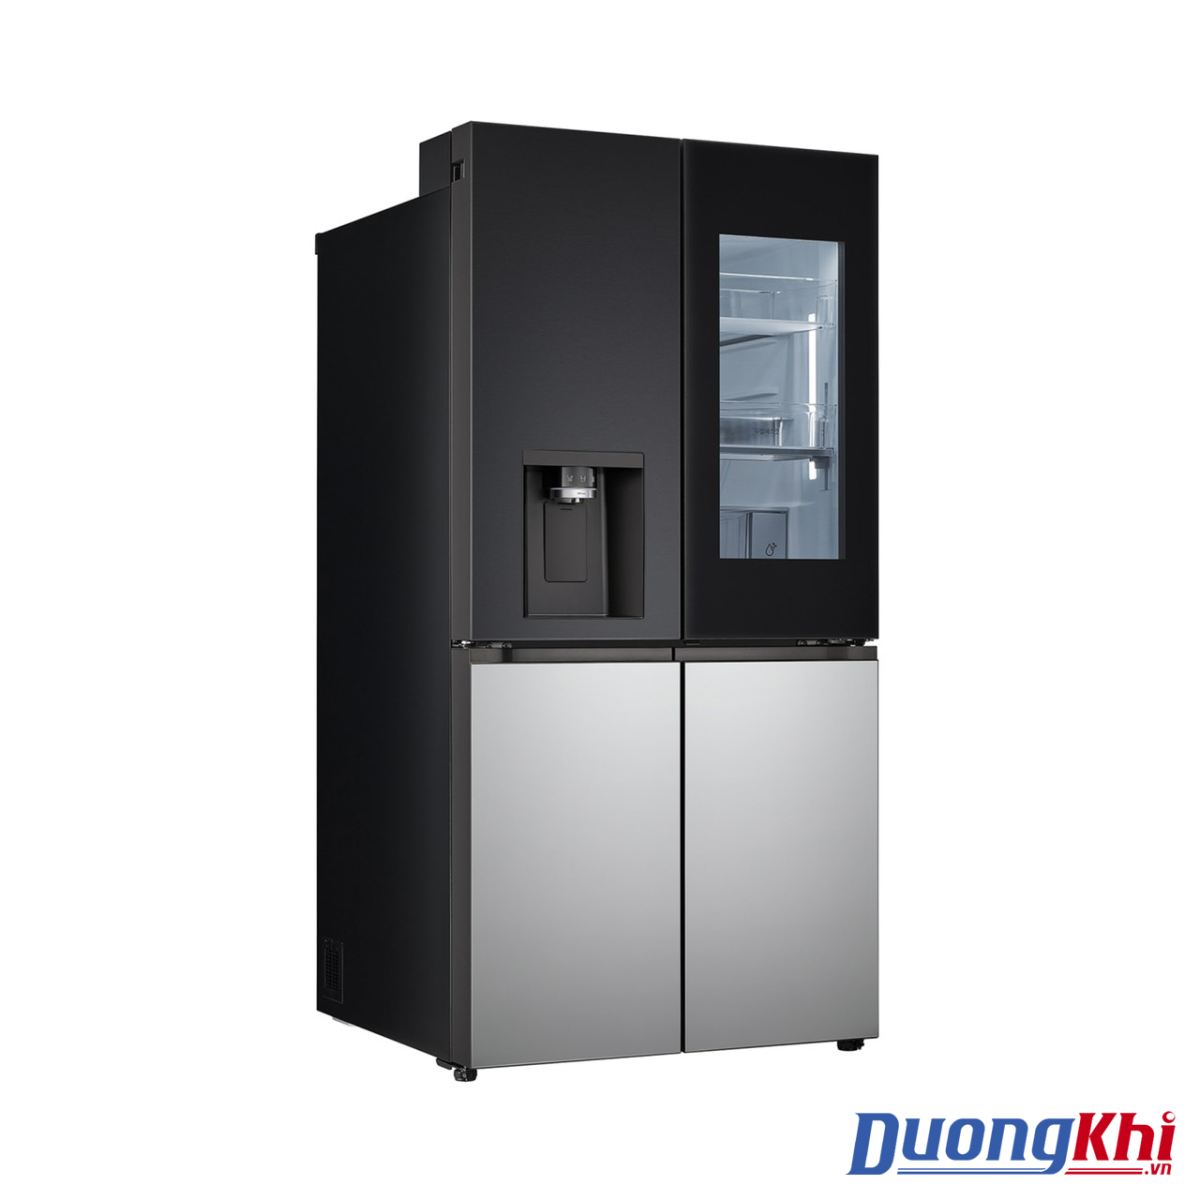 Tủ lạnh LG Dios Side by side màu đen - bạc 820L 3